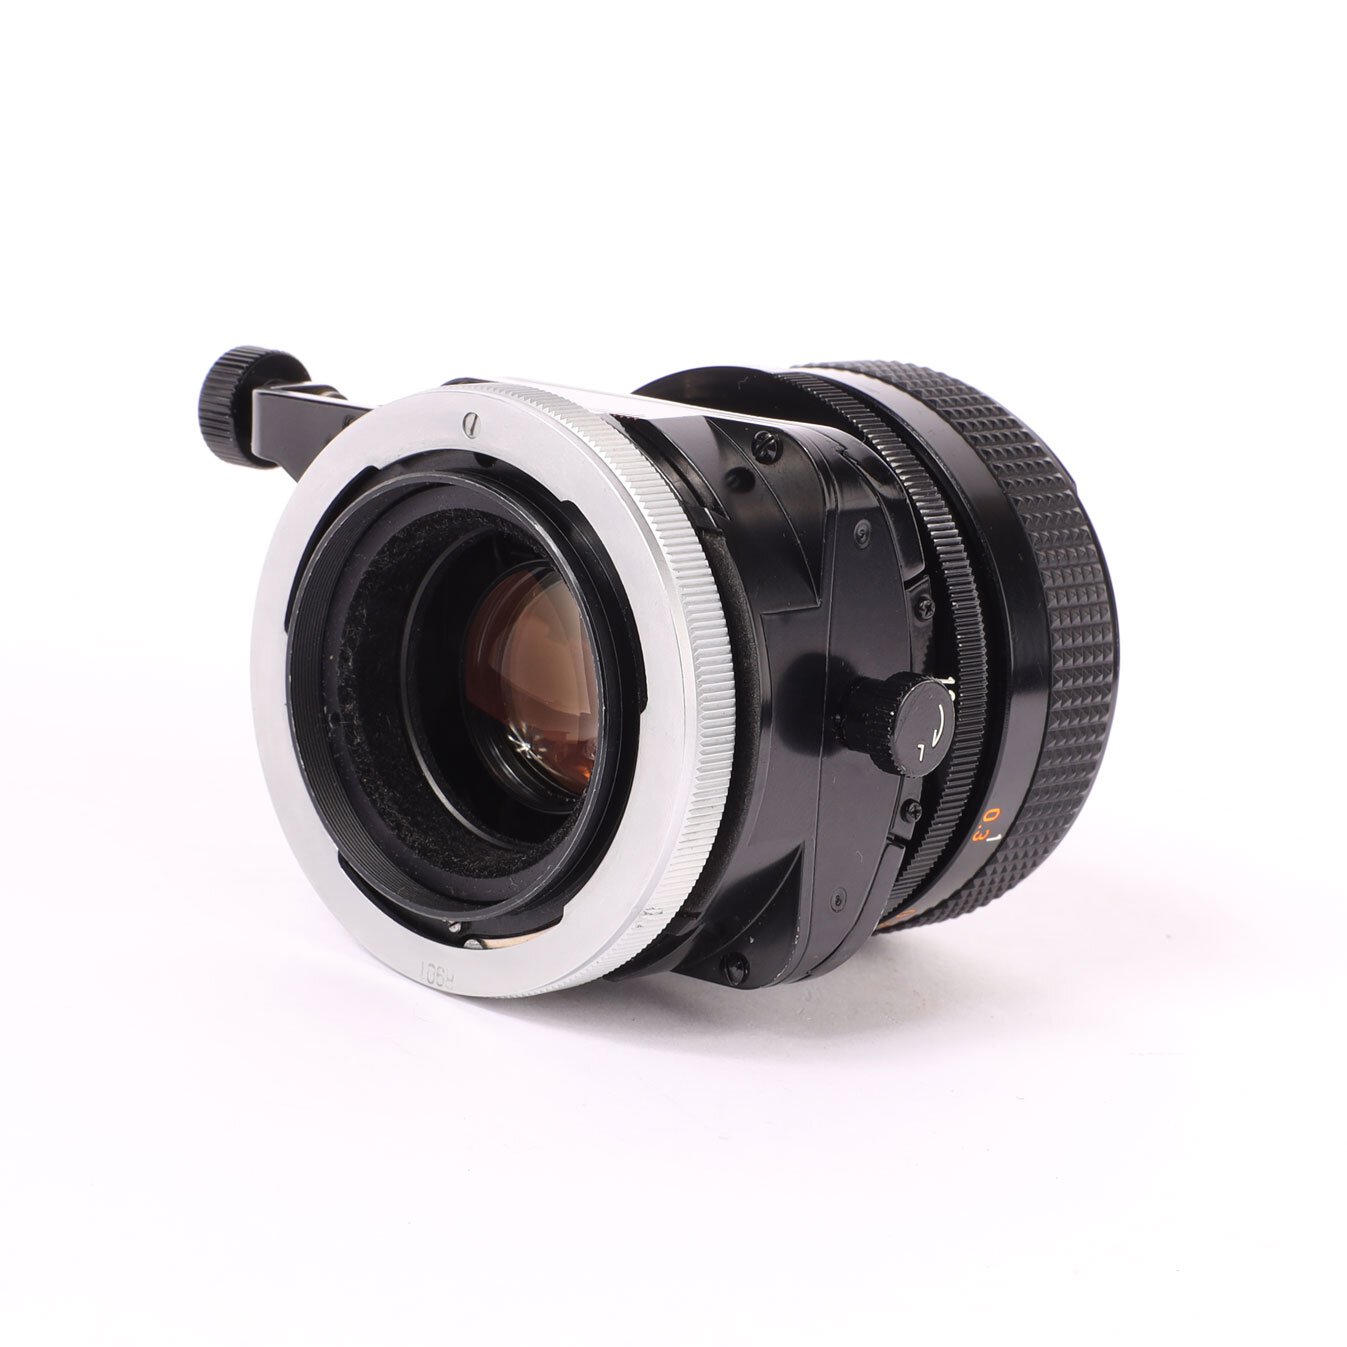 Canon Lens TS 35mm 2,8 S.S.C. FD Tilt-shift